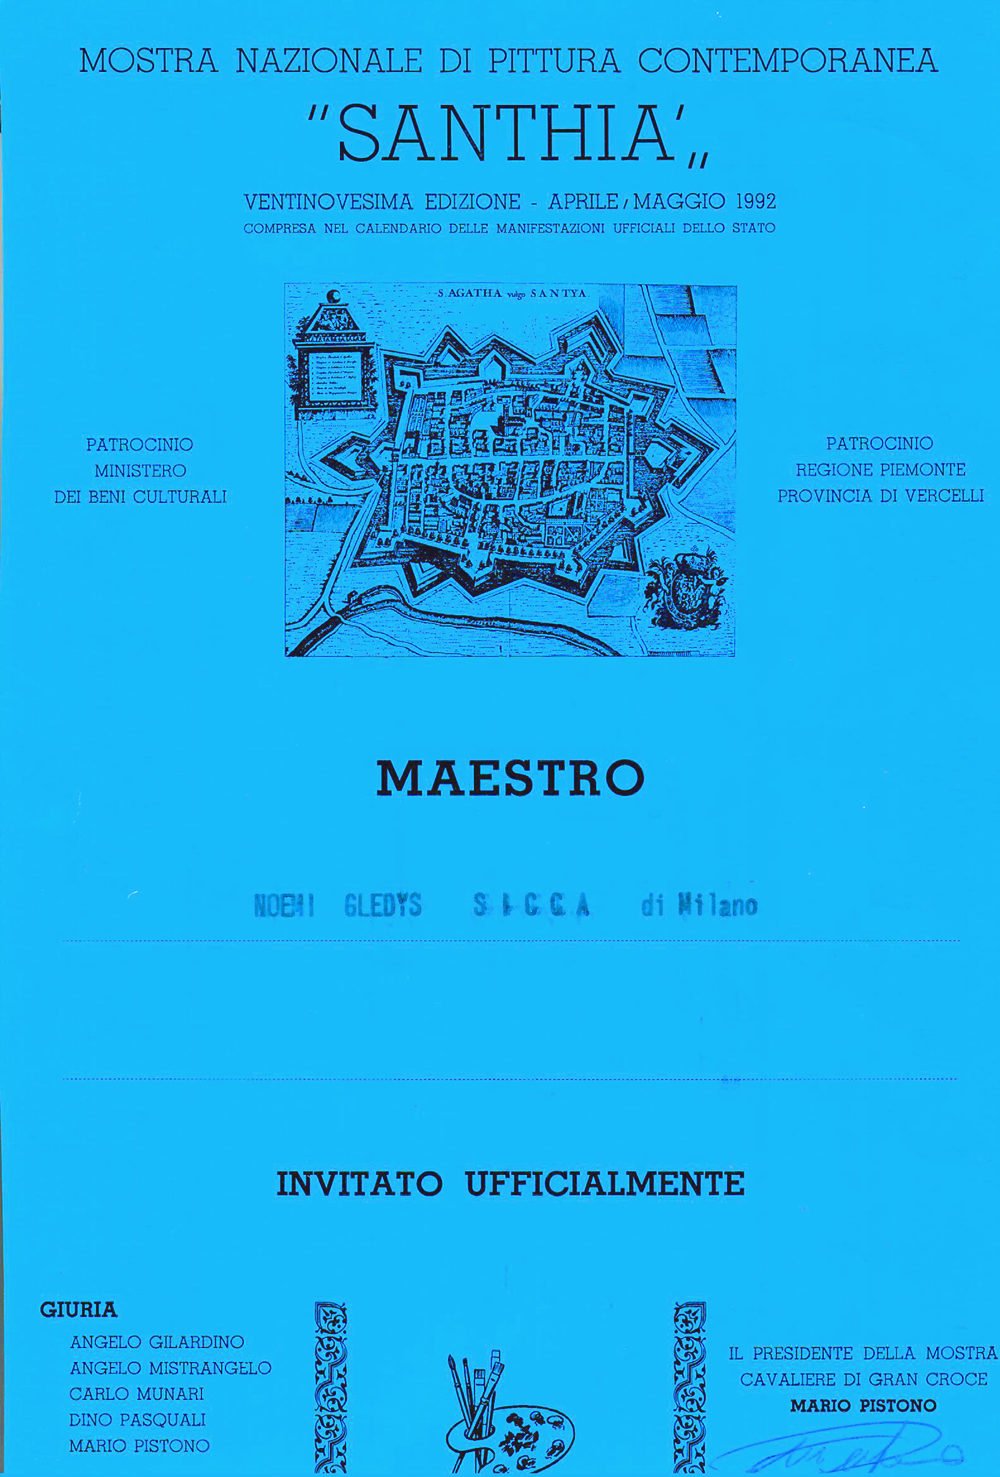 1992 - Collettiva di Pittura Contemporanea ad invito, Sala dell'Auditorium di S. Francesco, Santhia'.